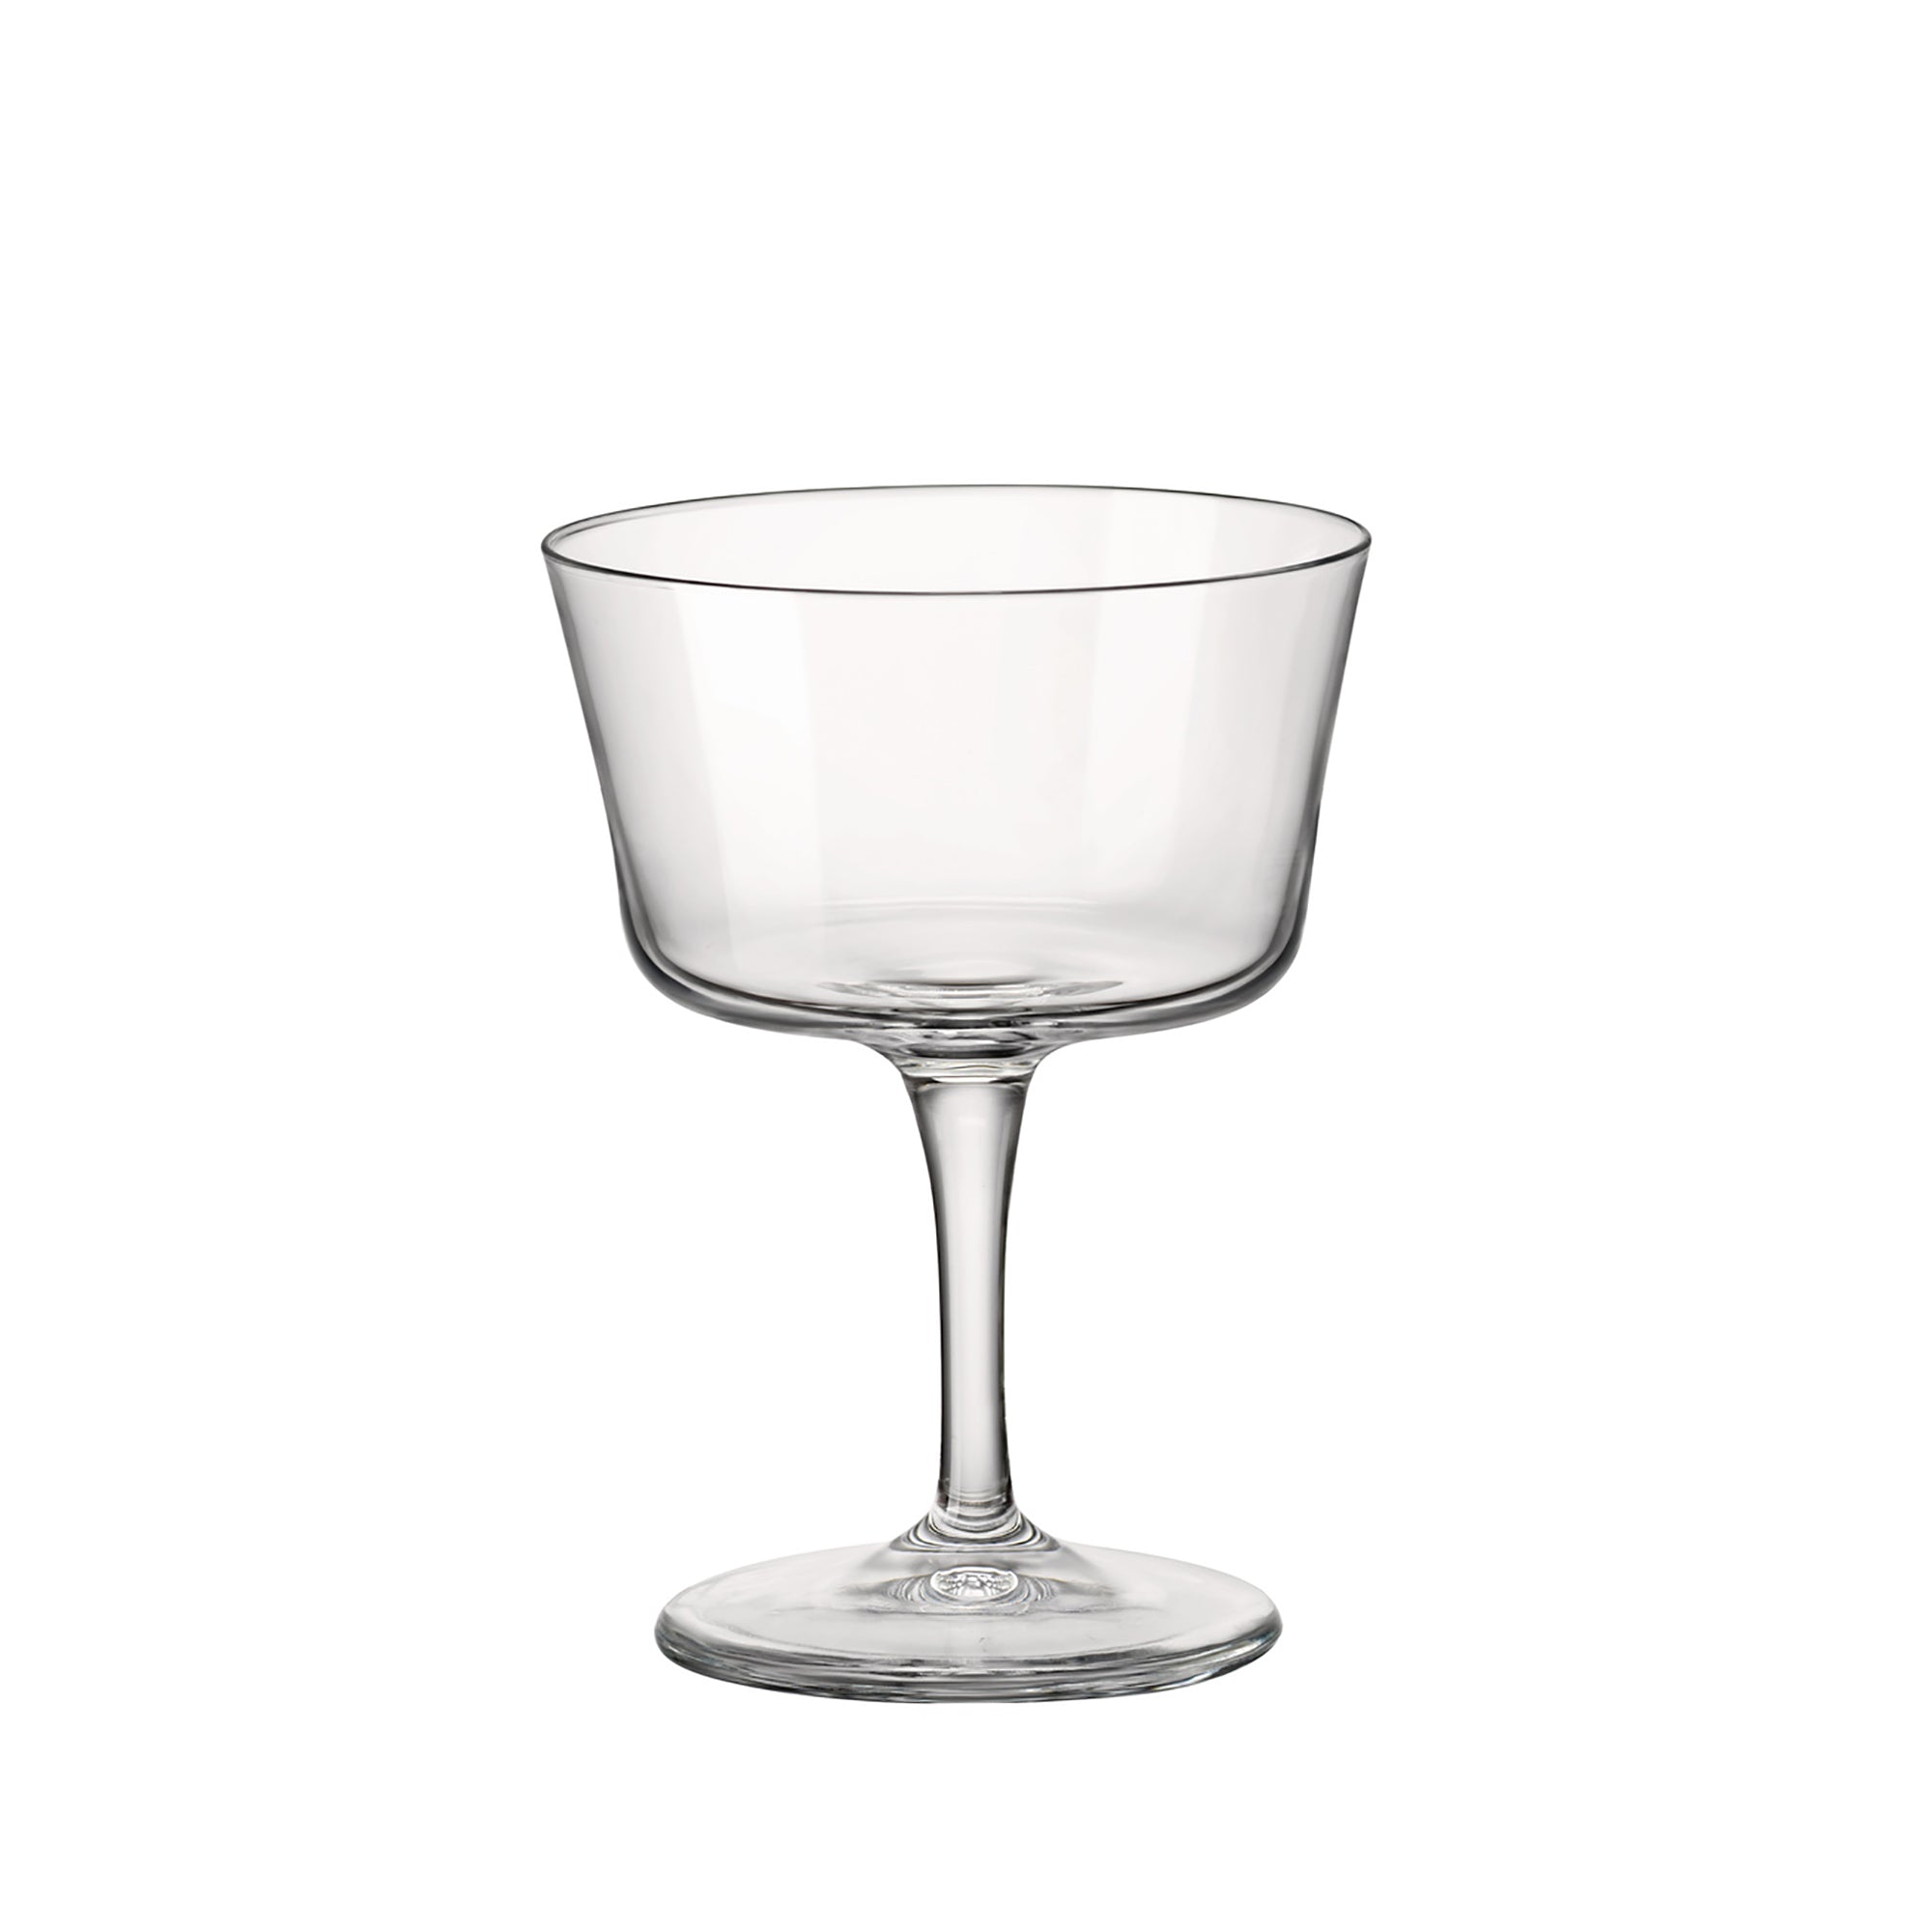 Bartender 7.5 oz. Novecento Fizz Cocktail Glasses (Set of 4)